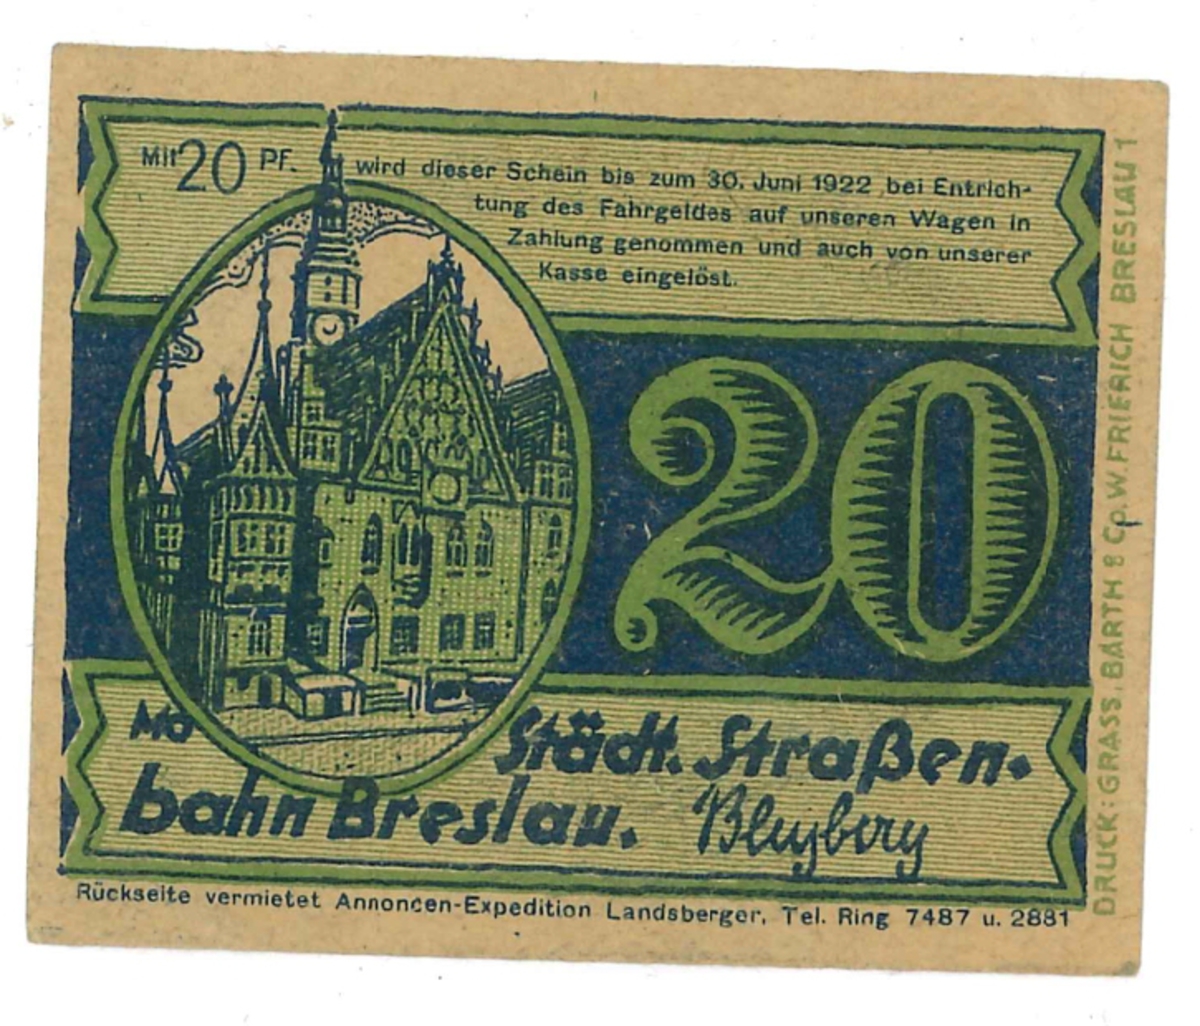 Kupong på 20 Pfennig, från år 1922. 

Ingår i en samling sedlar, huvudsakligen från Tyskland.